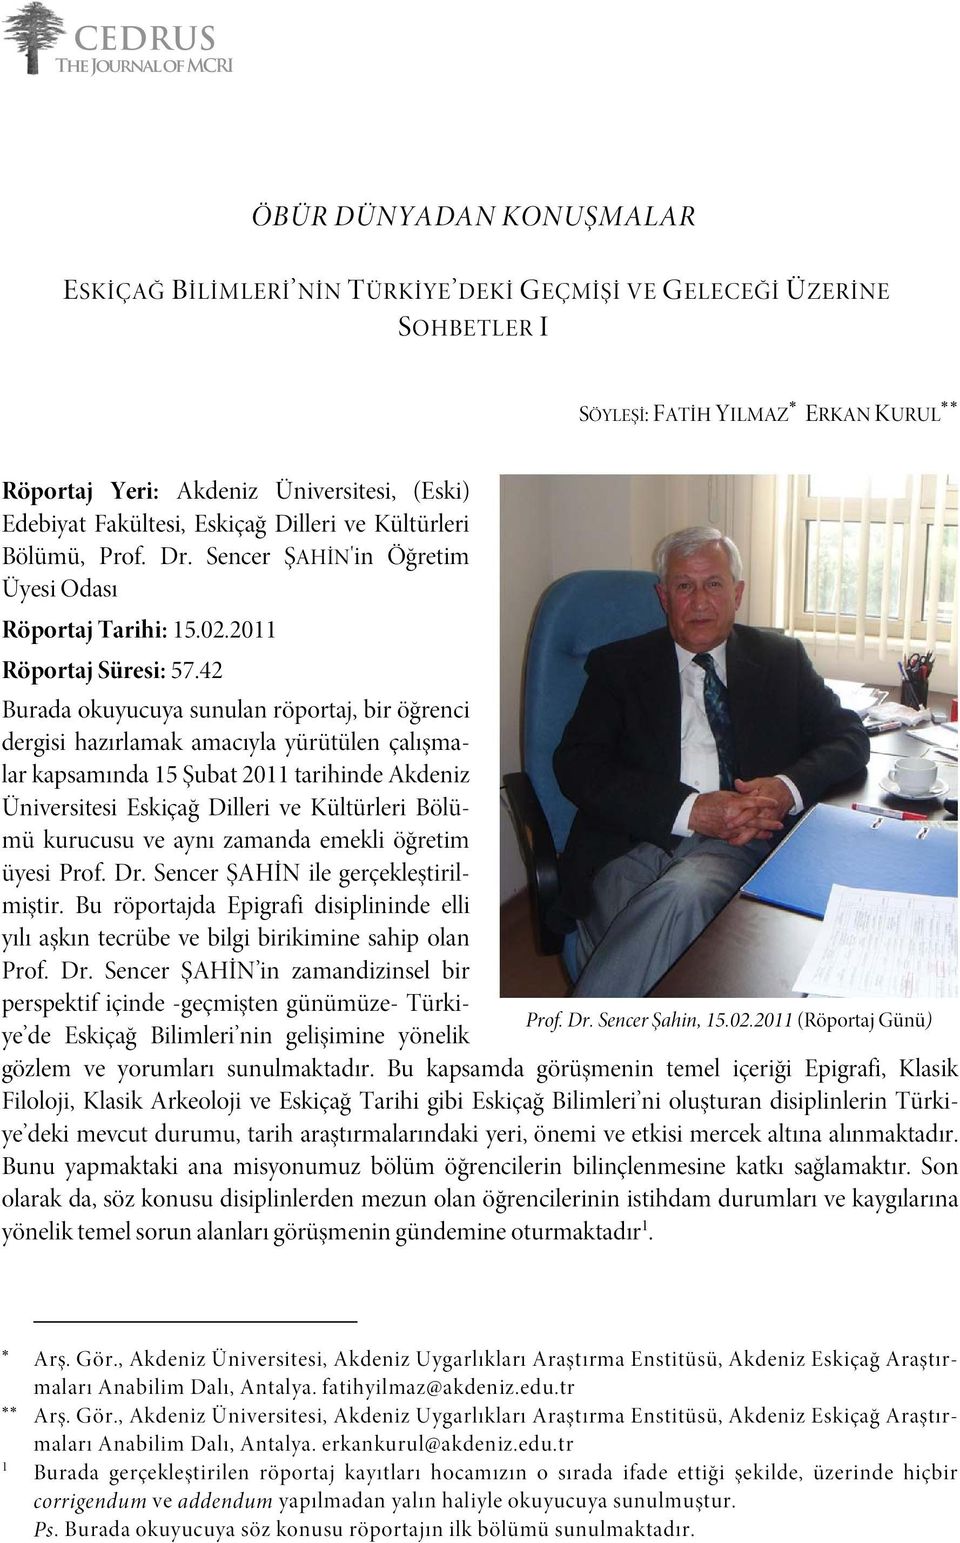 42 Burada okuyucuya sunulan röportaj, bir öğrenci dergisi hazırlamak amacıyla yürütülen çalışmalar kapsamında 15 Şubat 2011 tarihinde Akdeniz Üniversitesi Eskiçağ Dilleri ve Kültürleri Bölümü